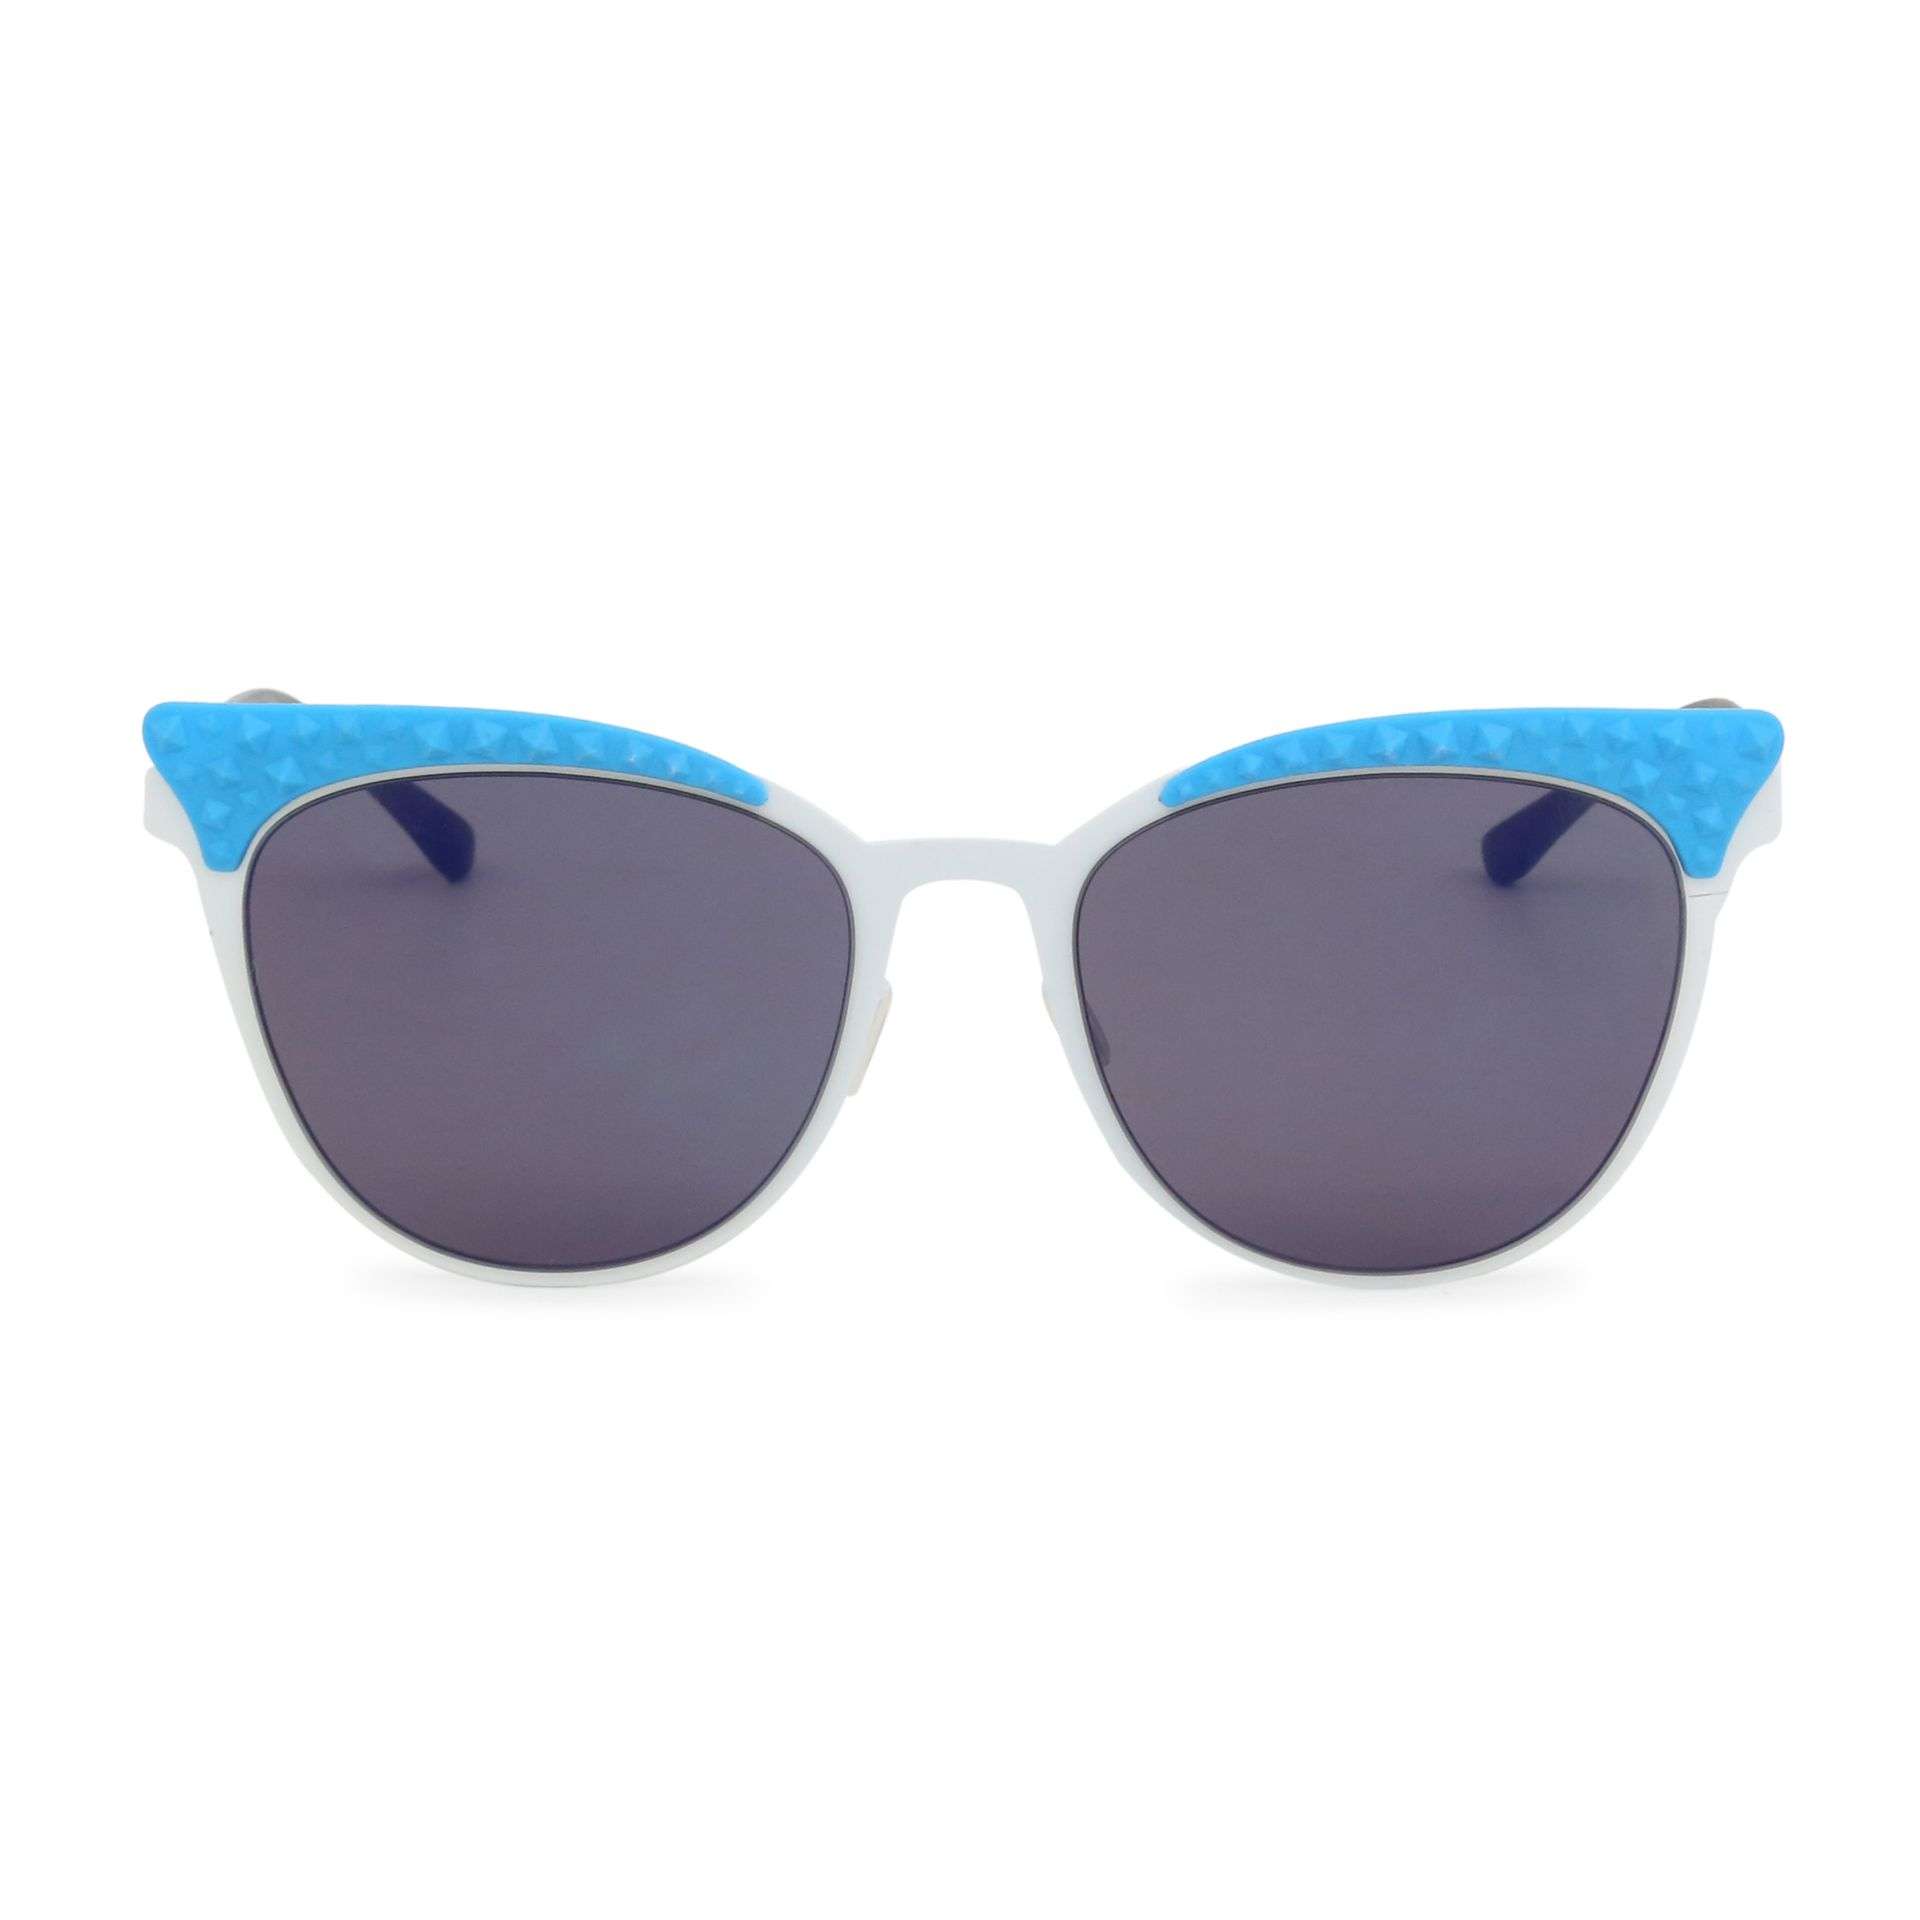 Sonnenbrille blau